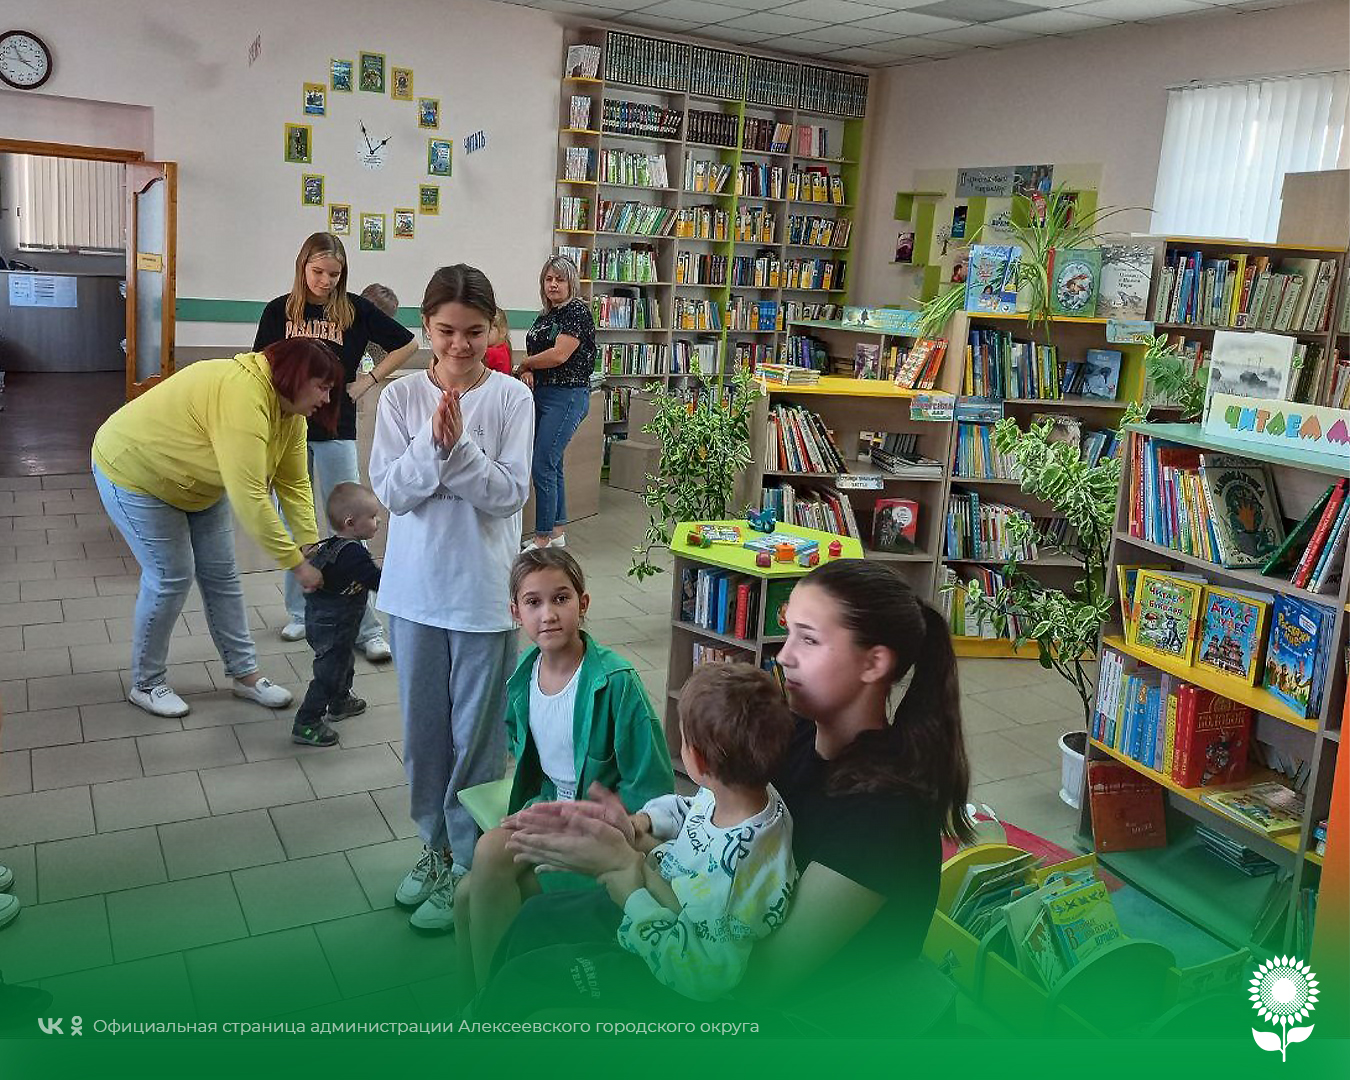 Сотрудники центральной детской библиотеки Алексеевского городского округа провели экскурсию для многодетных семей.